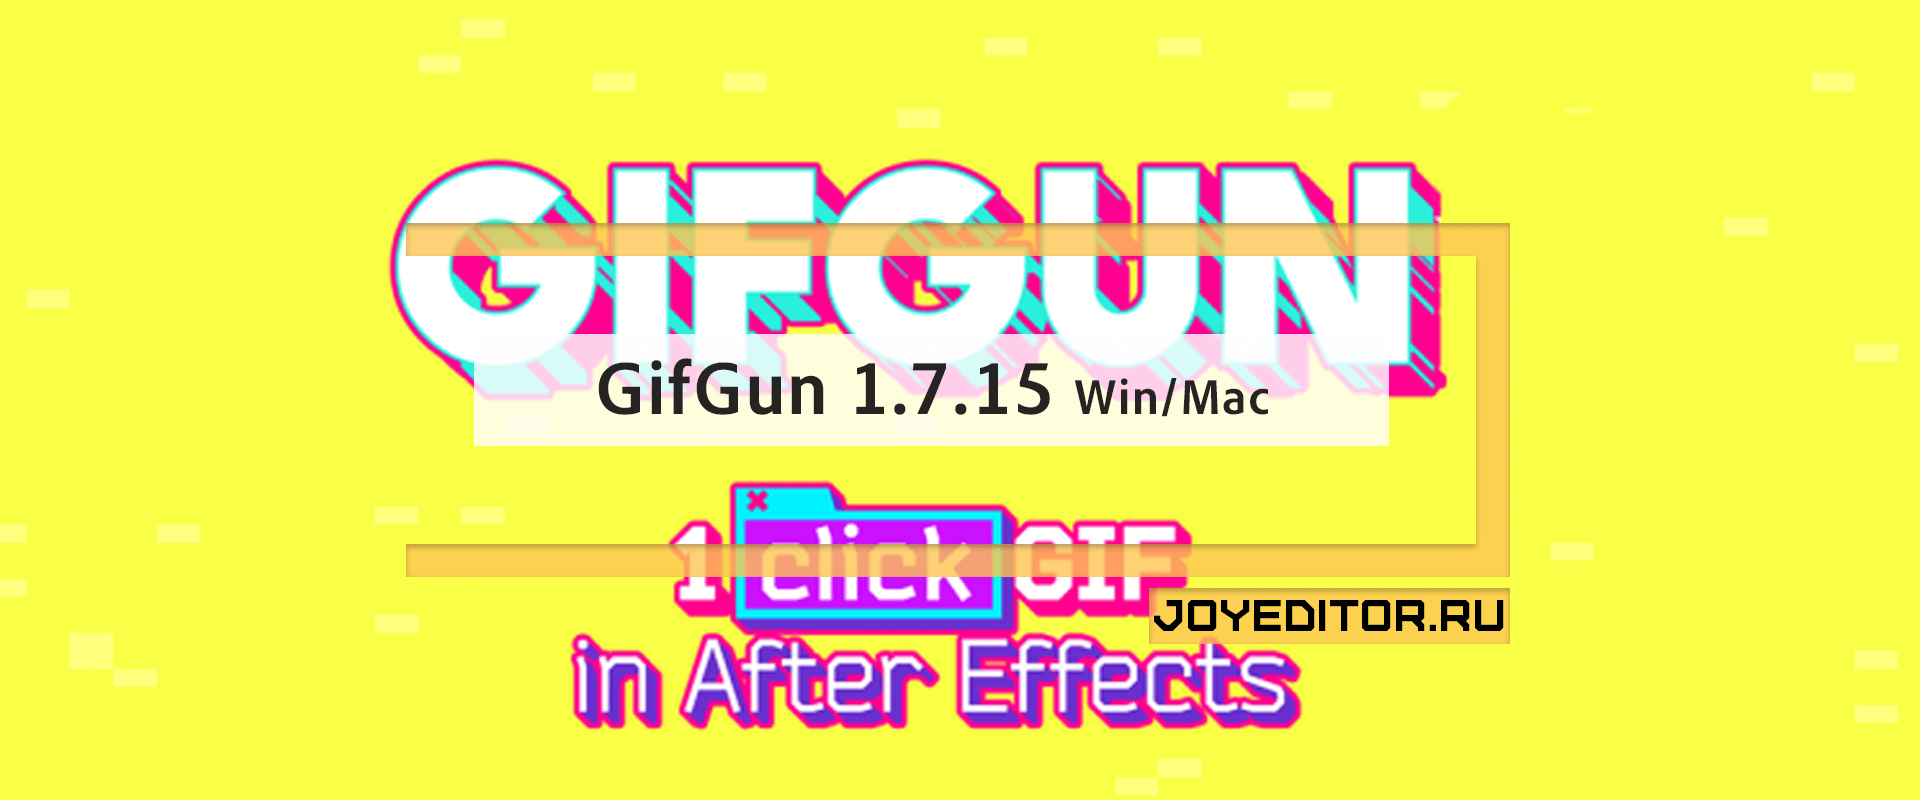 GifGun